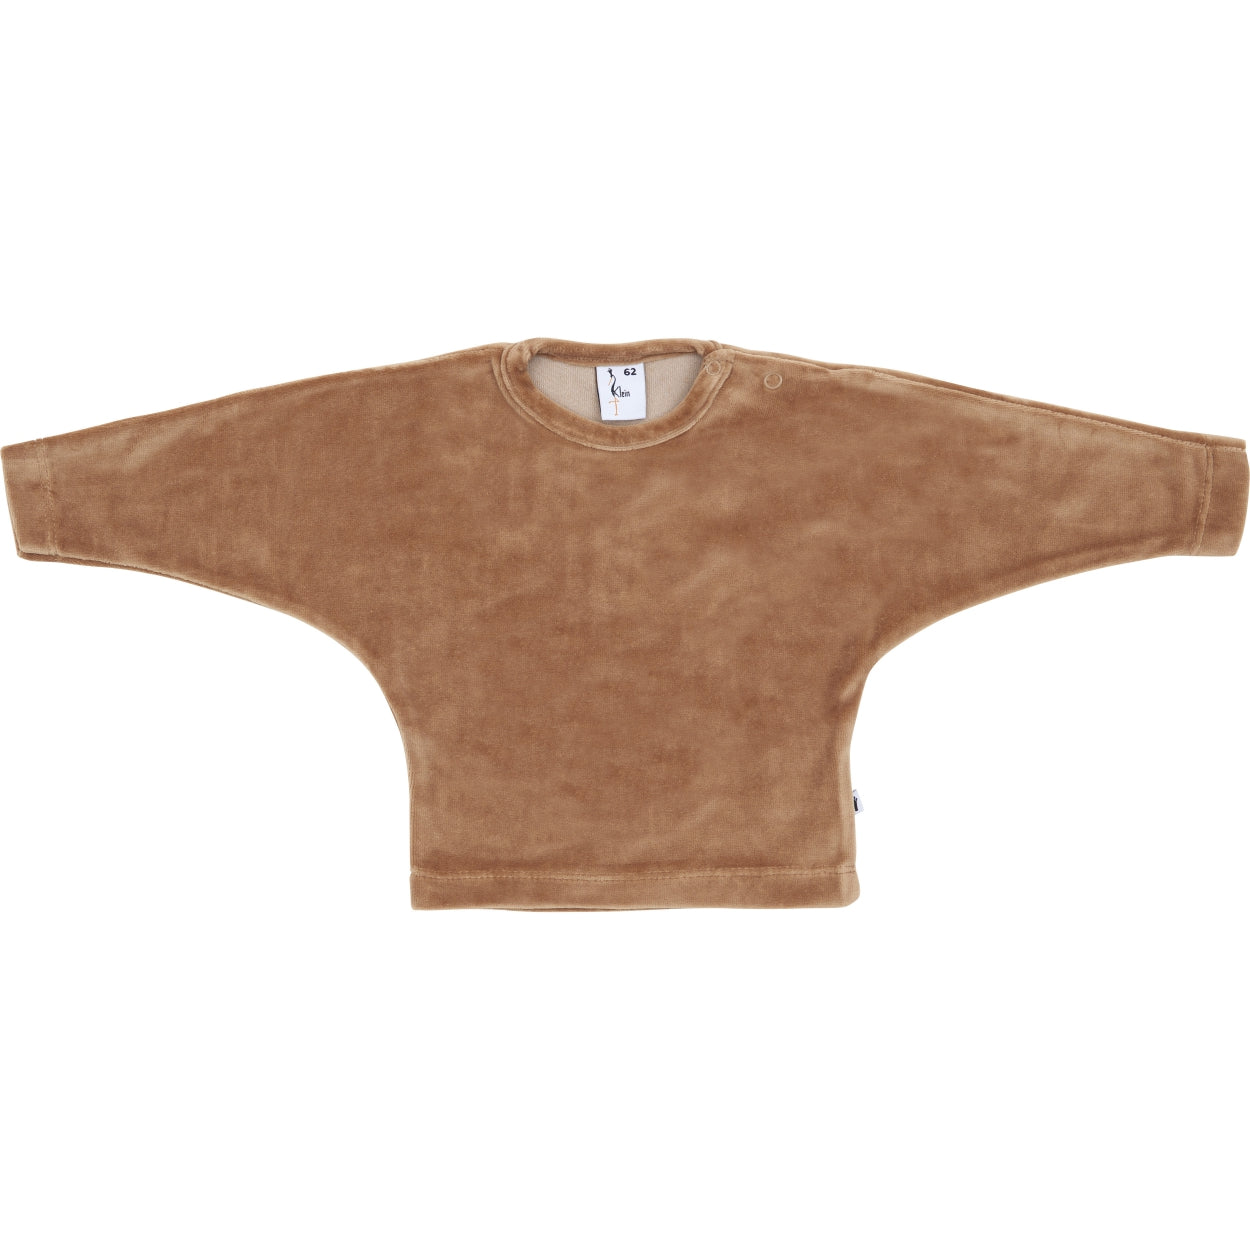 Jongens Sweater Velours van Klein Baby in de kleur Burro in maat 74.